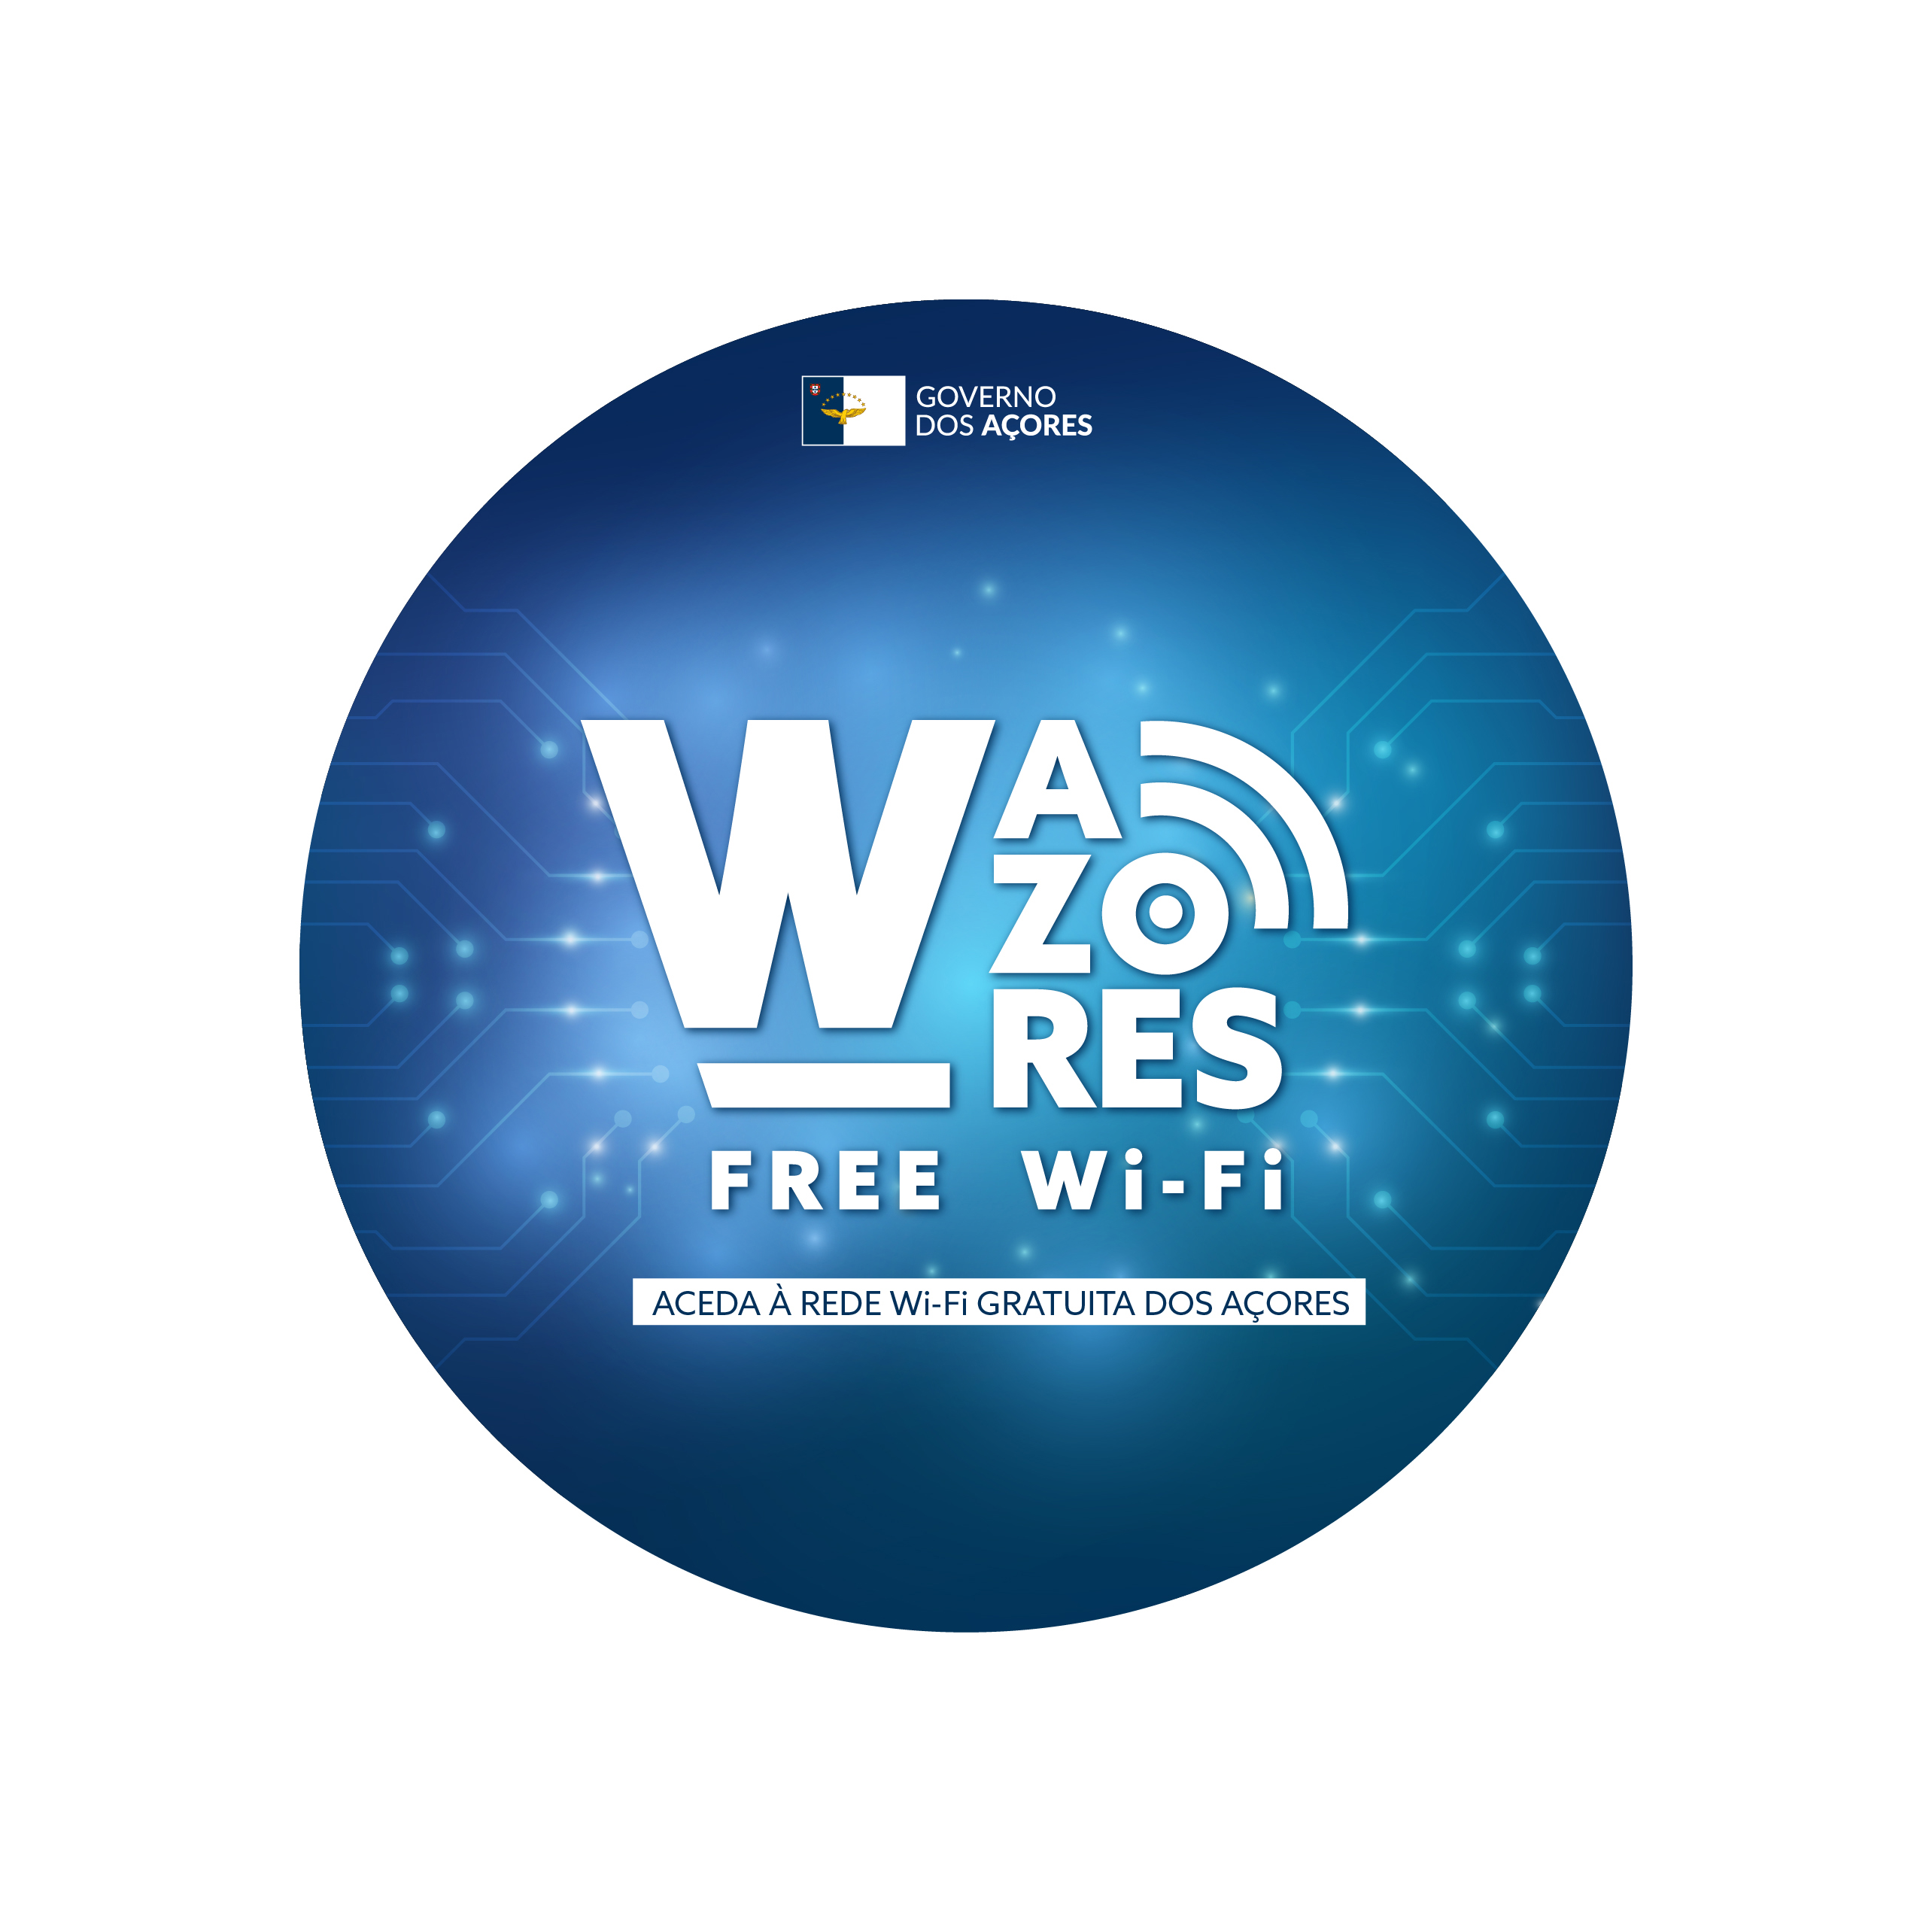 Rede Wi-Fi ‘W_AZORES’